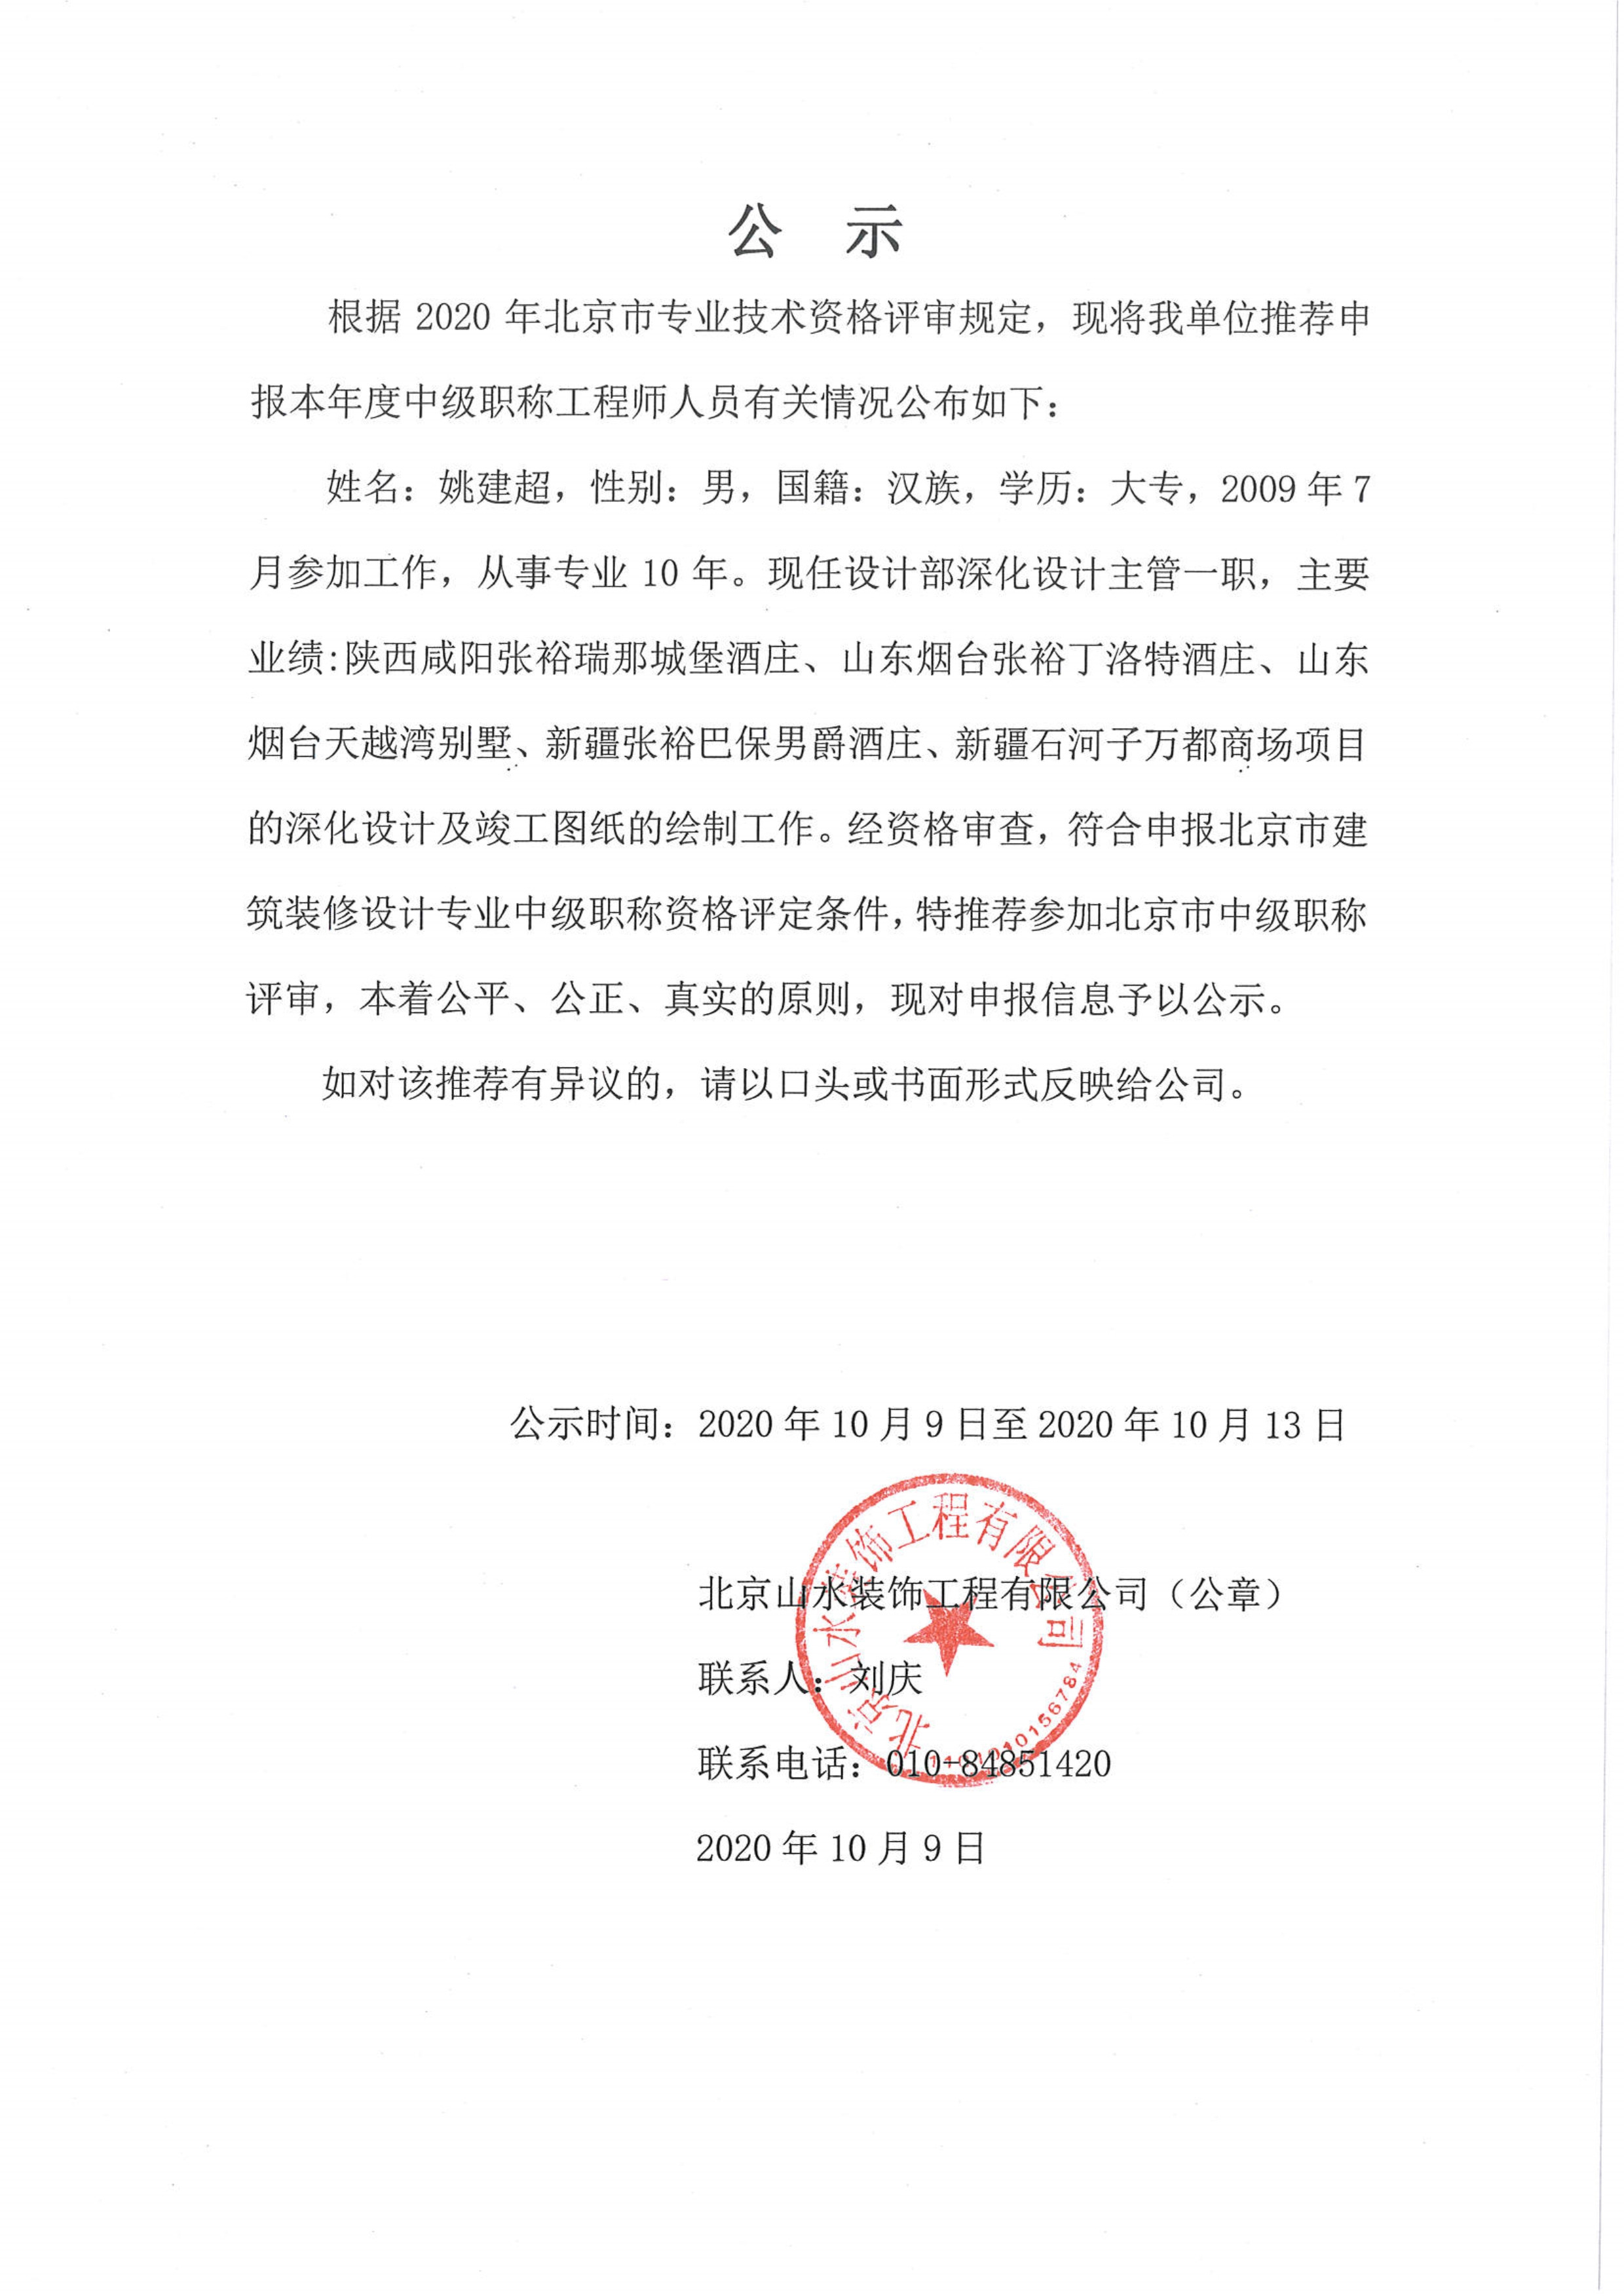 北京山水装饰工程有限公司申报2020年度中级职称公示-2020年10月9日